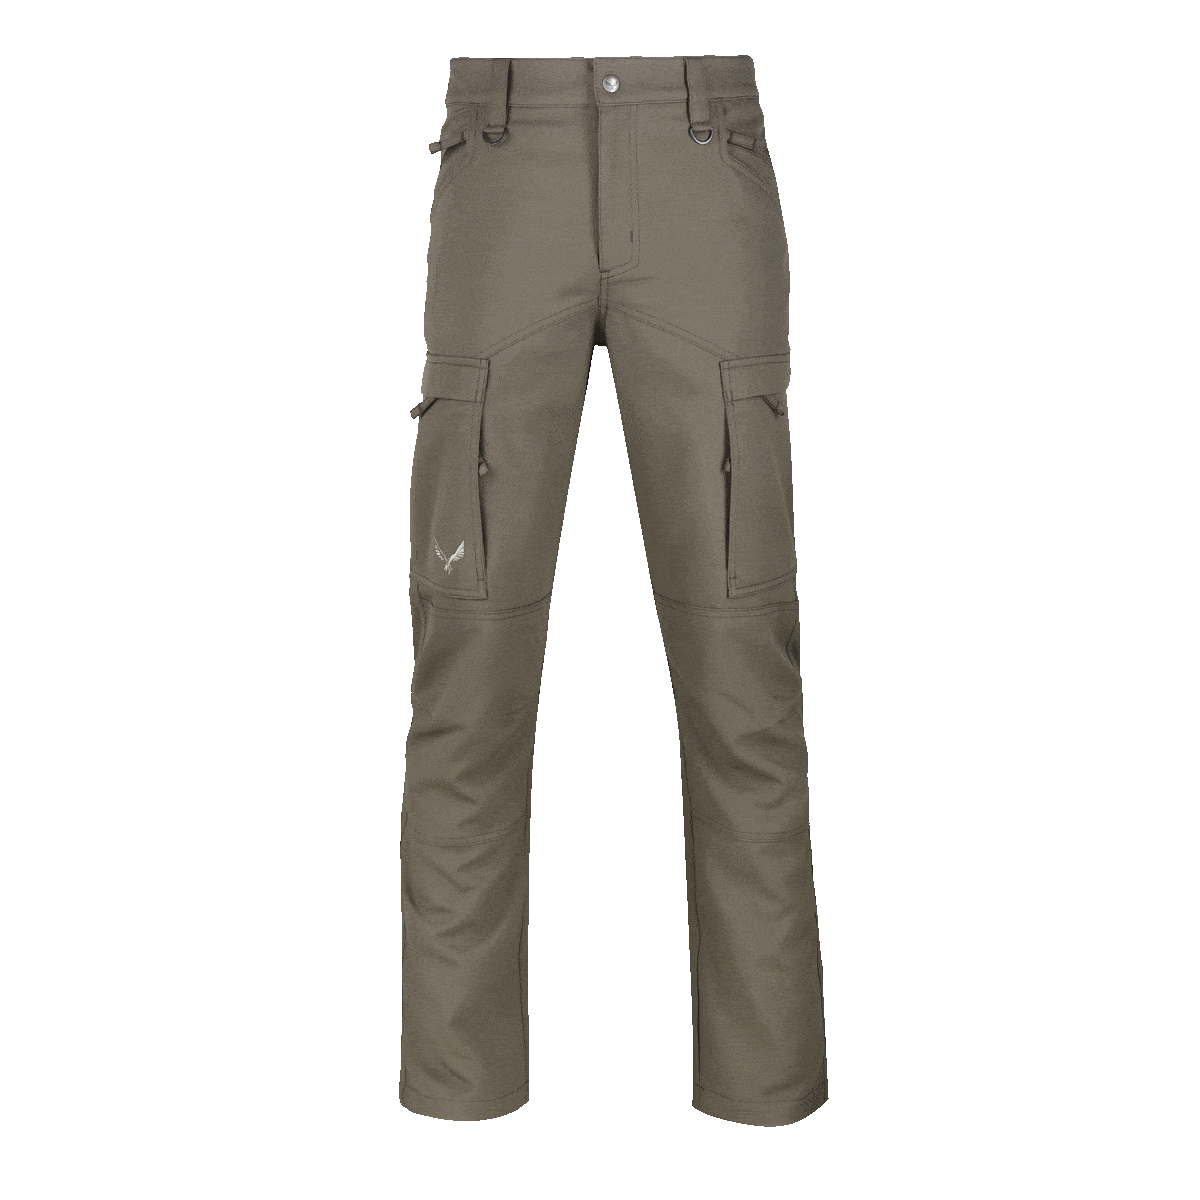 Virtus tactical range shop. Jeans clipart green pants